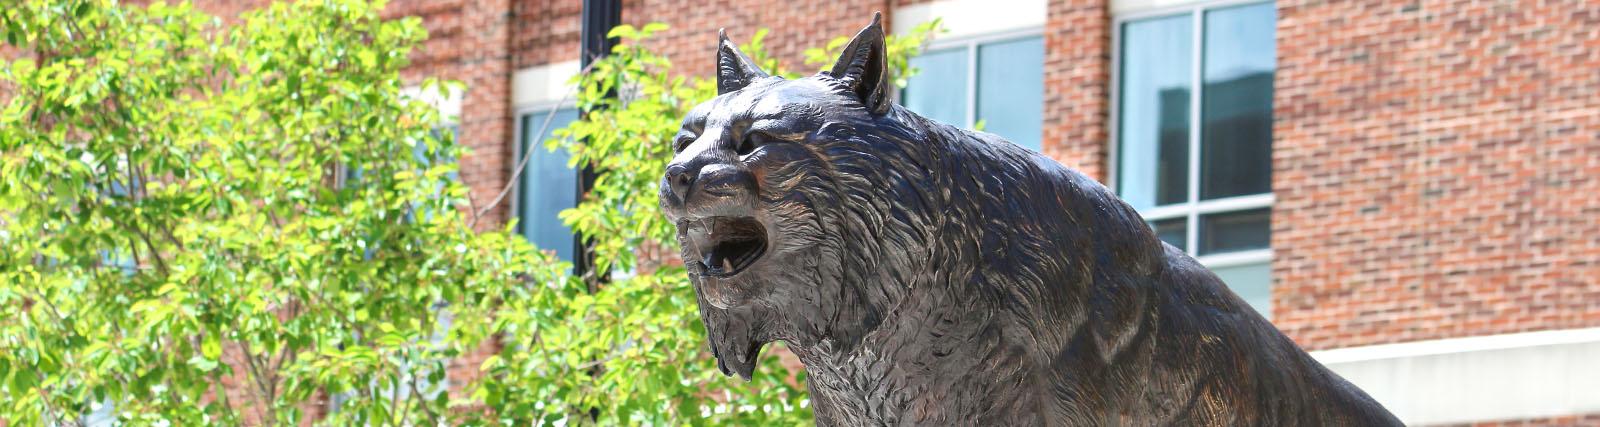 山猫雕像在FSU